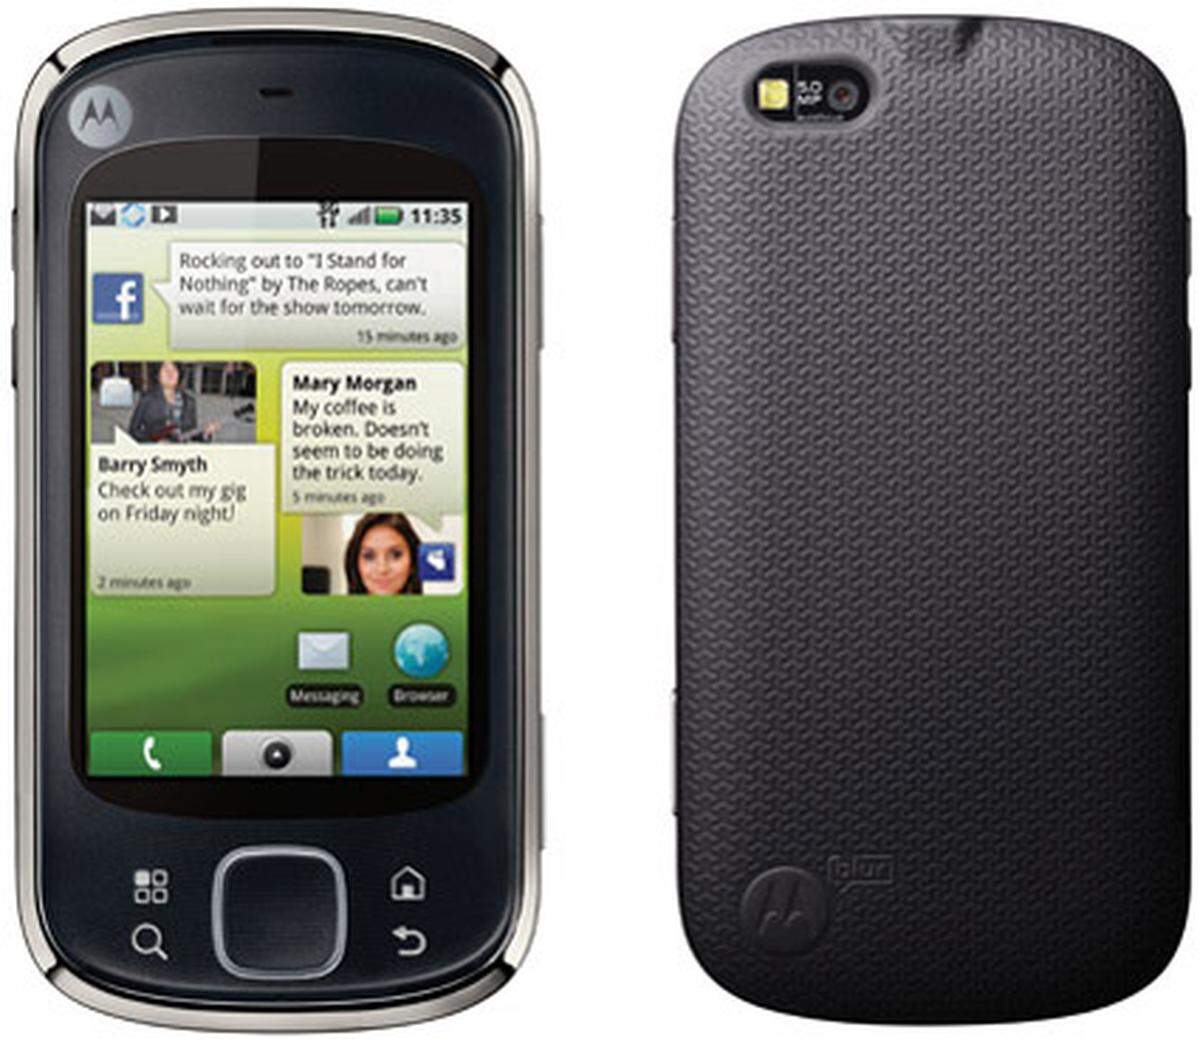 Motorola hat auf dem MWC mit dem Quench erneut ein Gerät mit Android-Betriebssystem vorgestellt. Es bietet einen 3,1-Zoll-Touchscreen, eine 5-Megapixel-Kamera und siedelt sich eher im niedrigen Preissegment an. Es soll noch im ersten Quartal 2010 auf den Markt kommen.